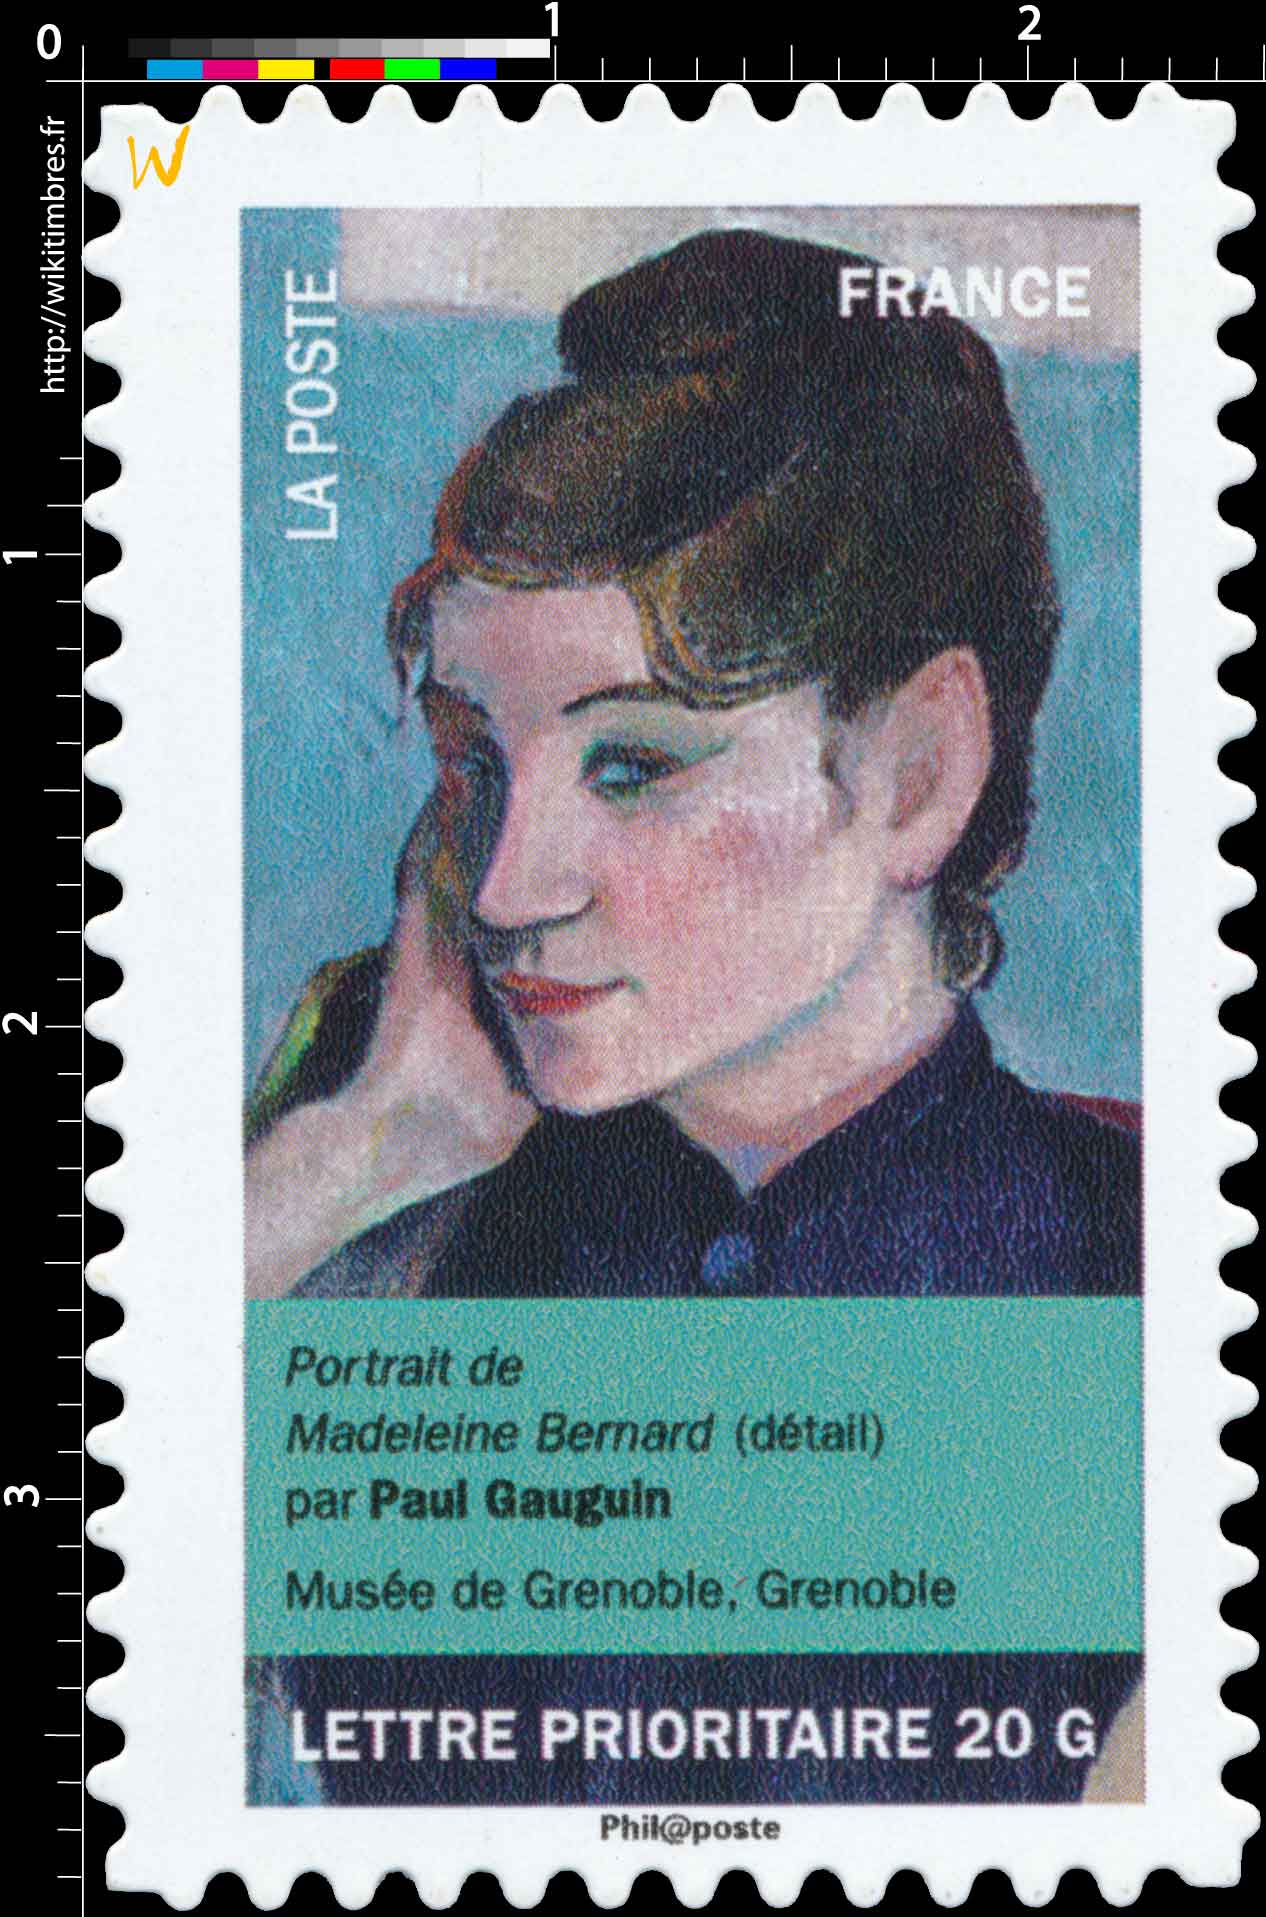 portrait de Madeleine Bernard (détail) par Paul Gauguin, musée de Grenoble, Grenoble